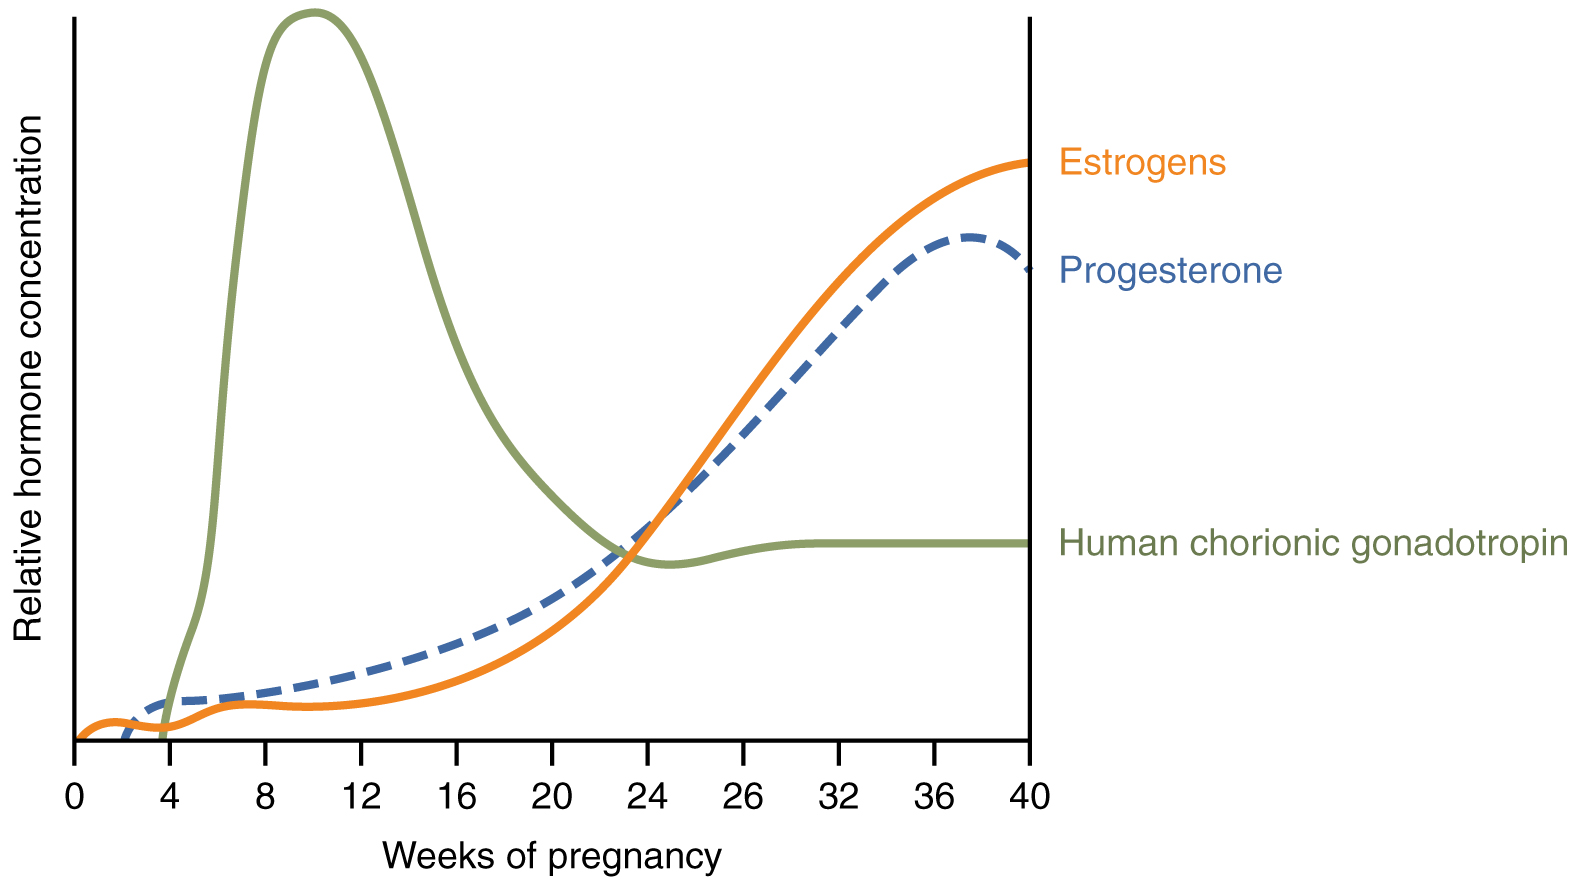 Una gráfica de concentración hormonal versus semana de embarazo muestra cómo varían tres hormonas a lo largo del embarazo.